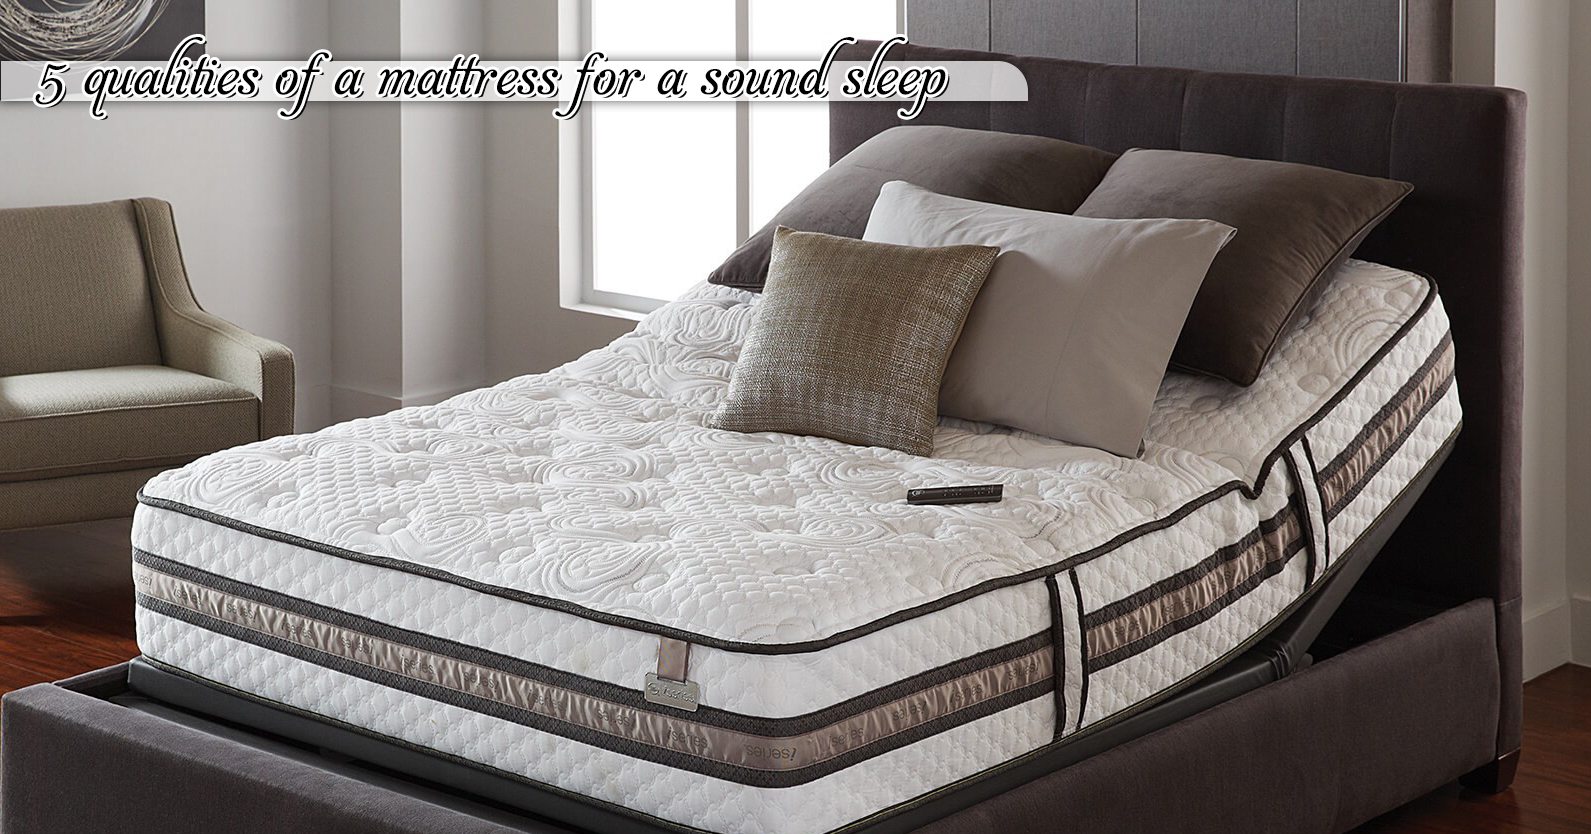 sound sleep mattress review